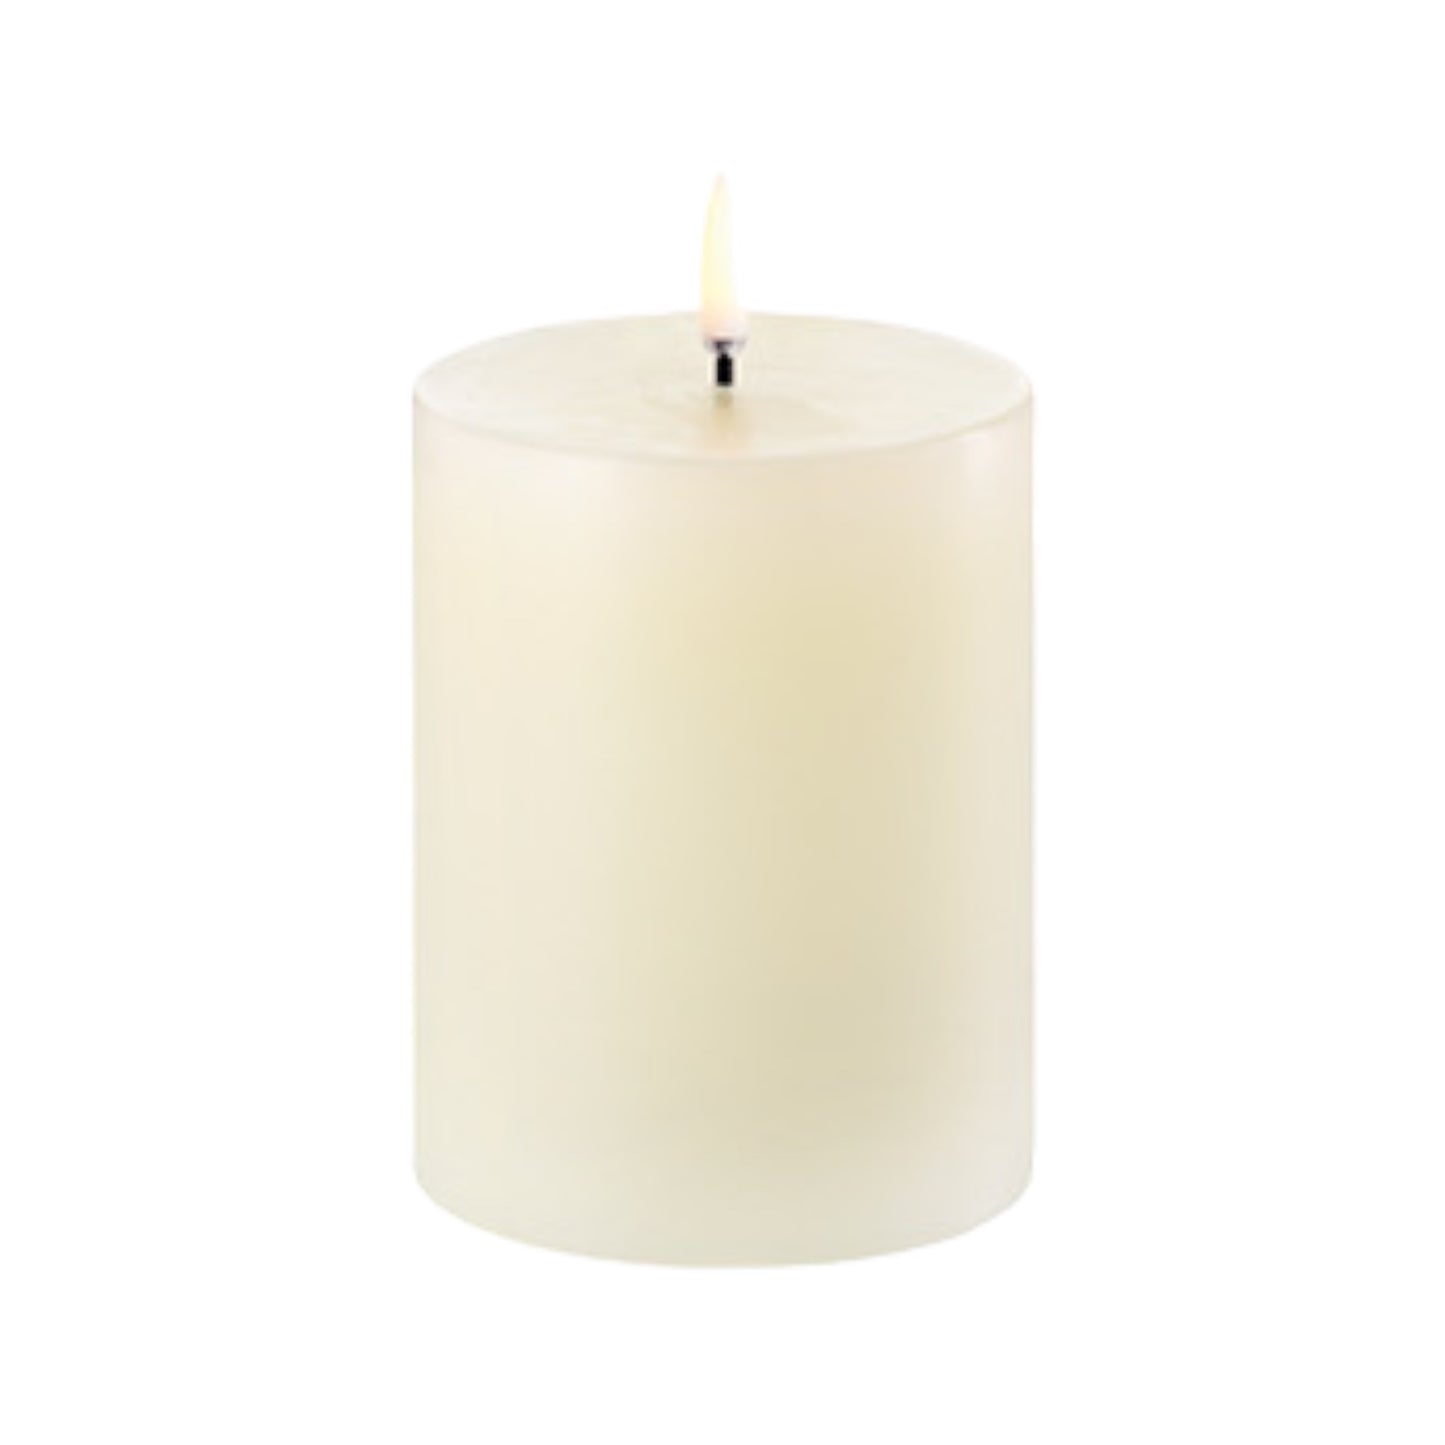 Uyuni Ivory 7.8x10cm LED Candle